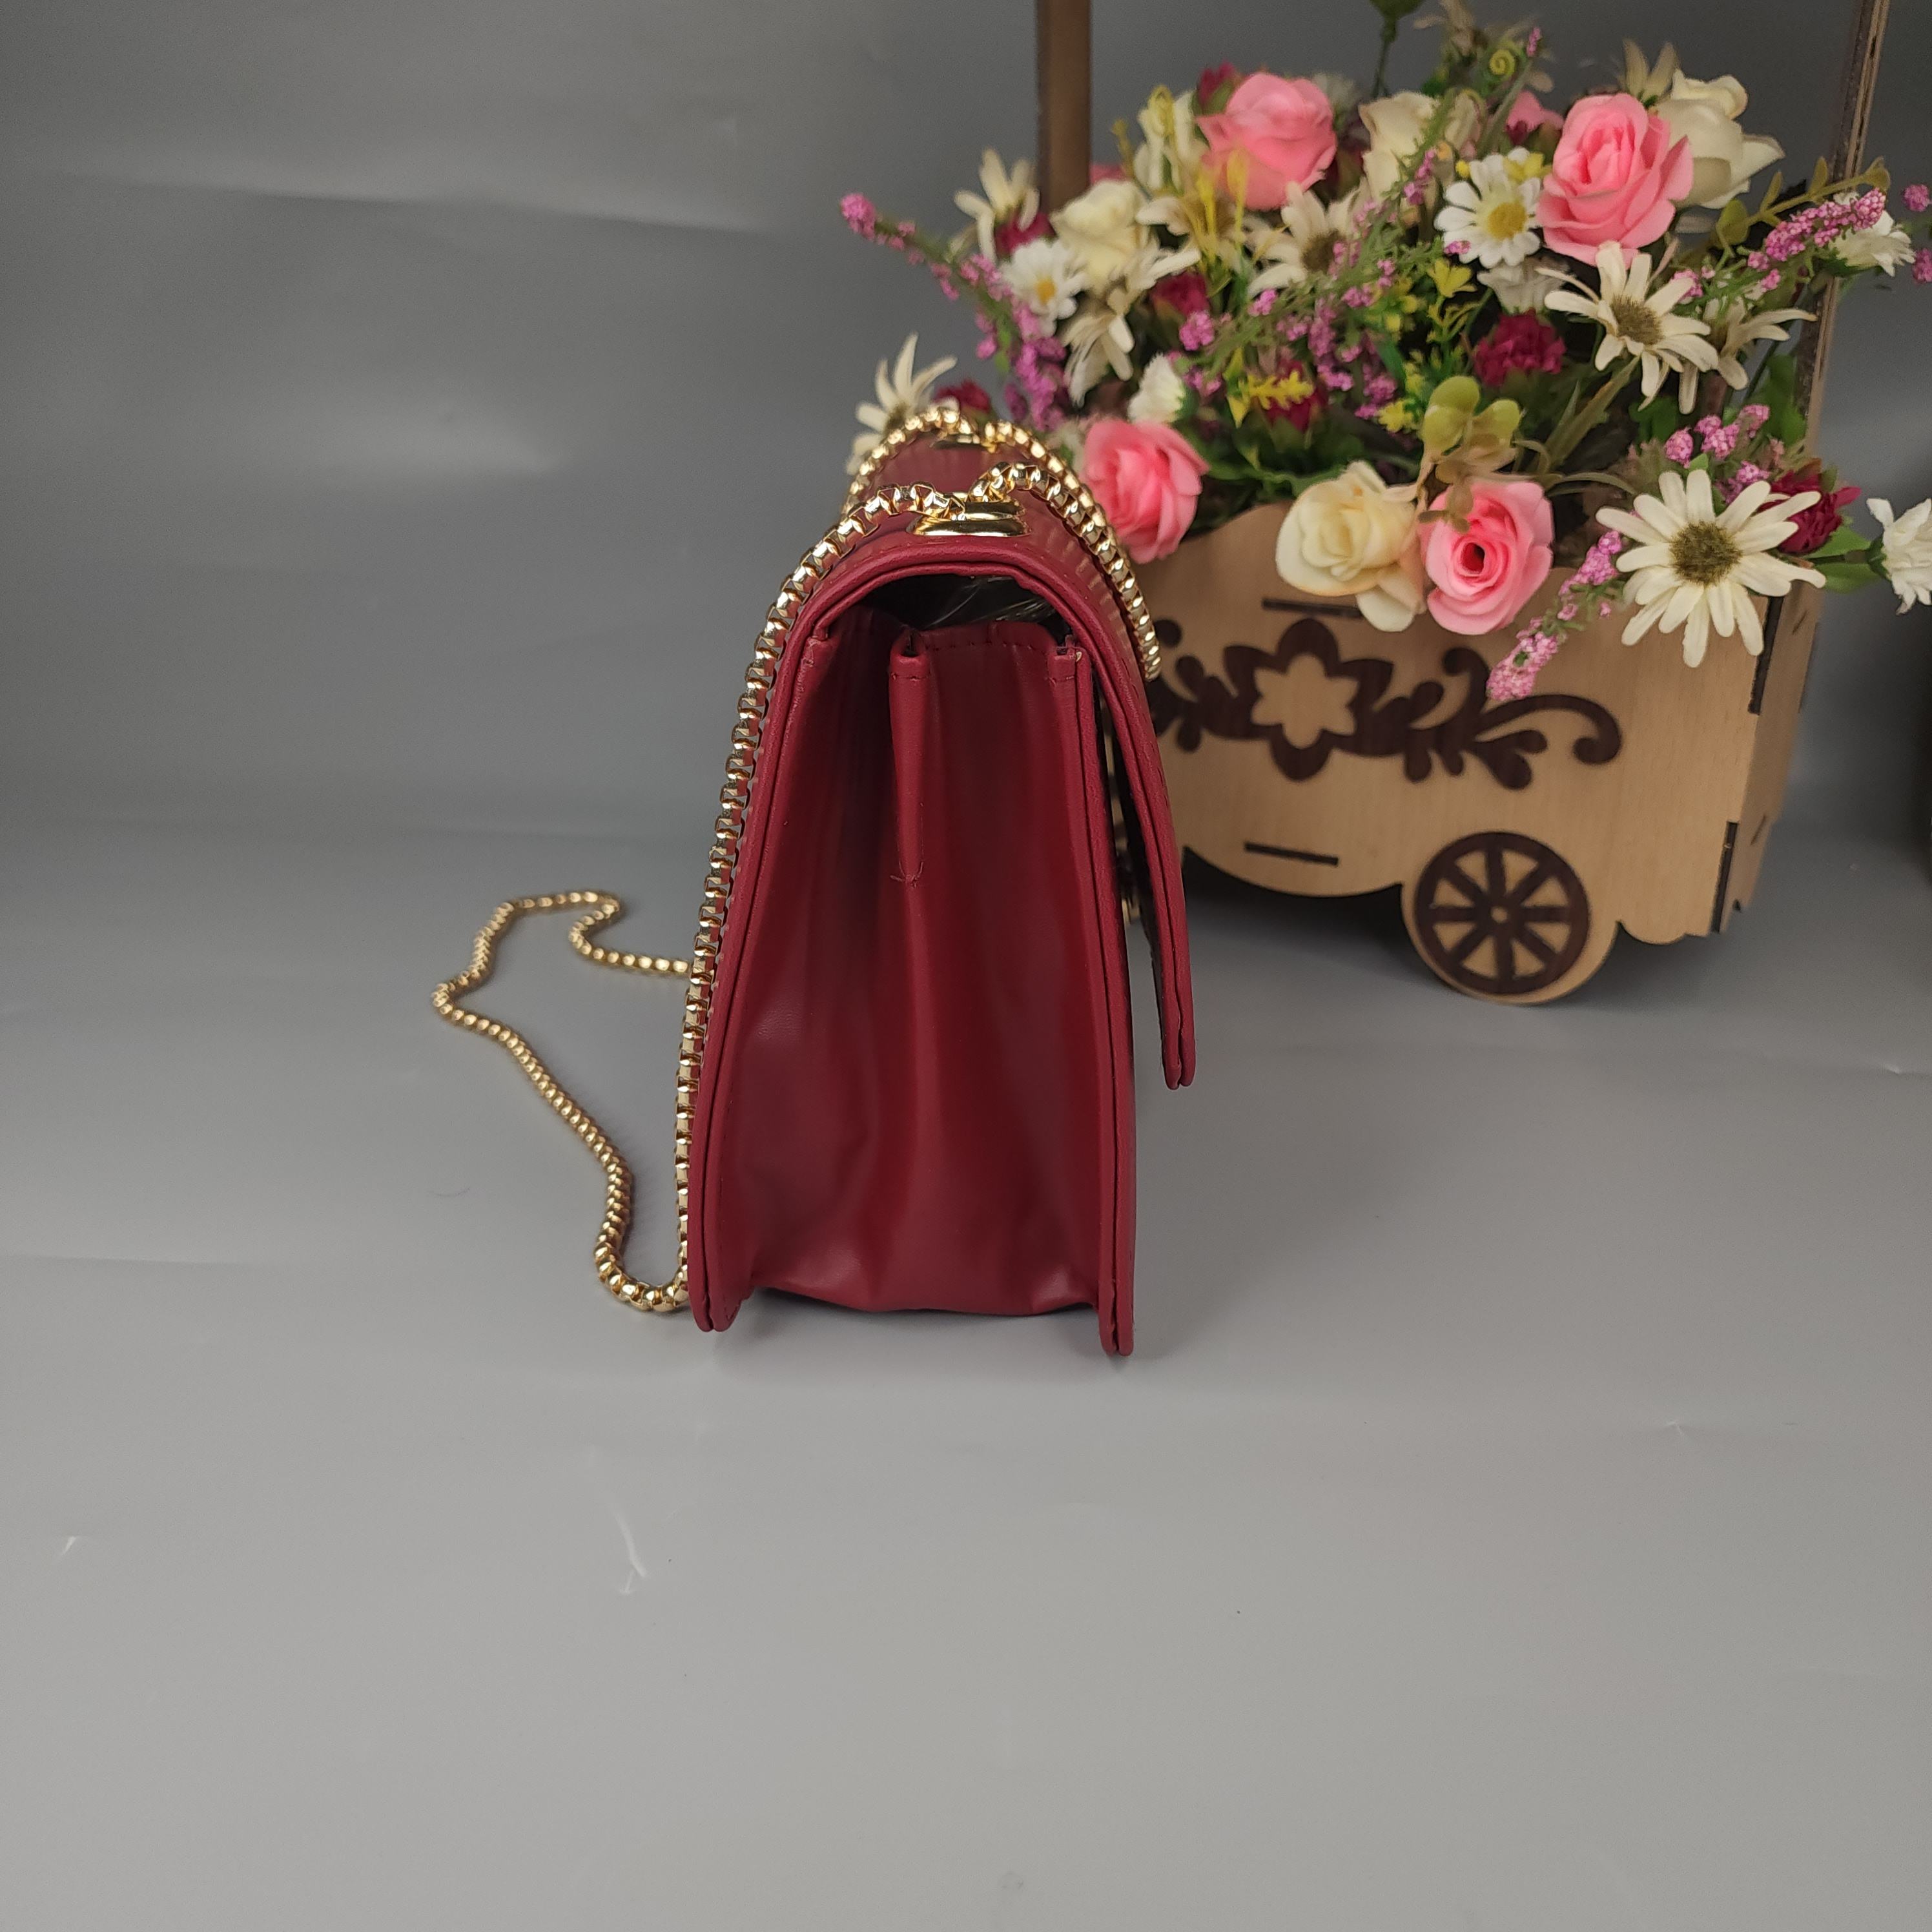 Maroon Crossbody Bag with Buckle - Maha fashions -  Handbags & Wallets